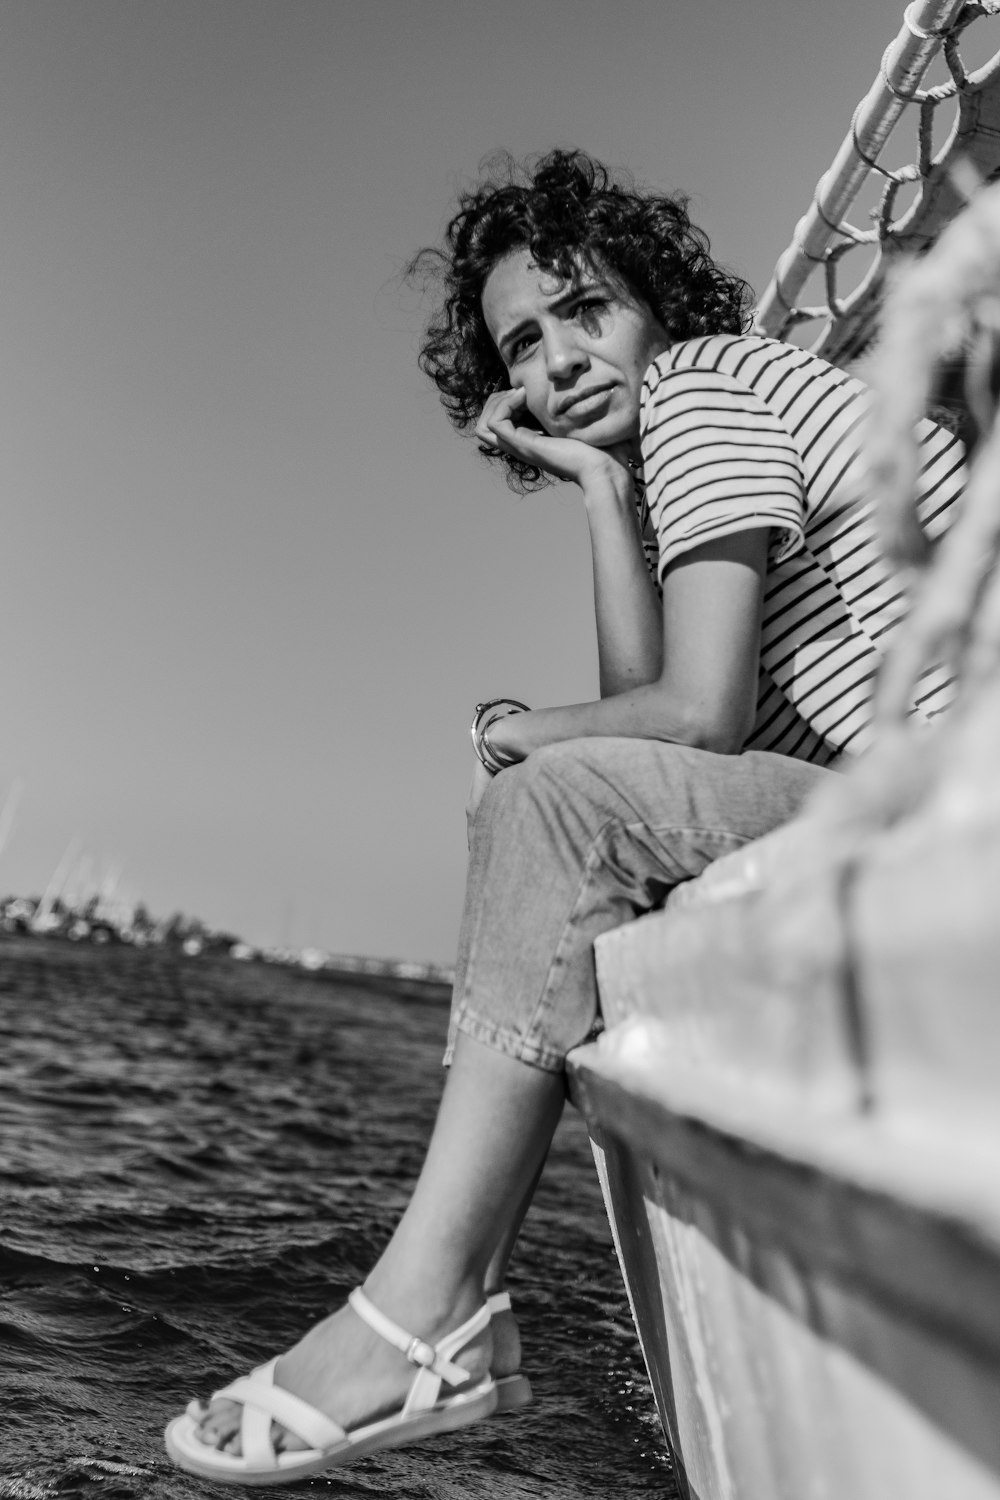 Eine Frau sitzt auf einem Boot im Wasser